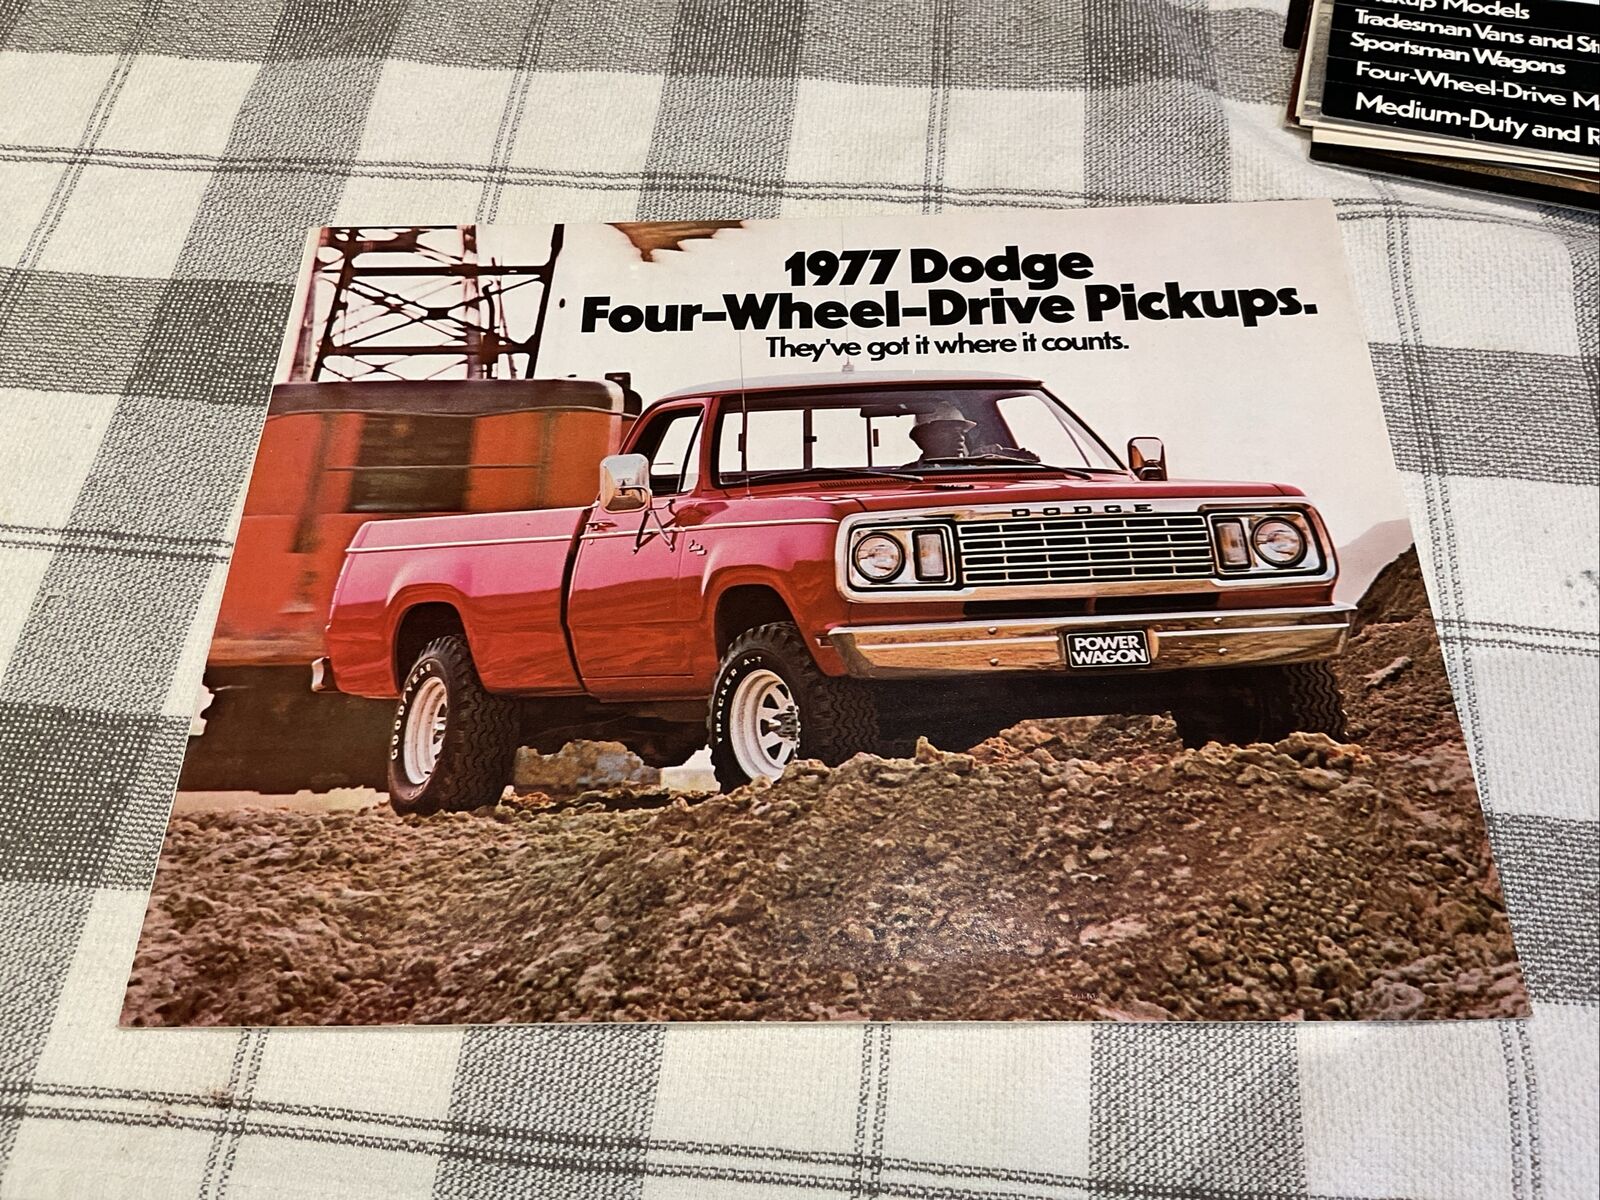 1977 Dodge Four Wheel Drive Pickup Trucks 4WD Vintage Dealer Sales Brochure